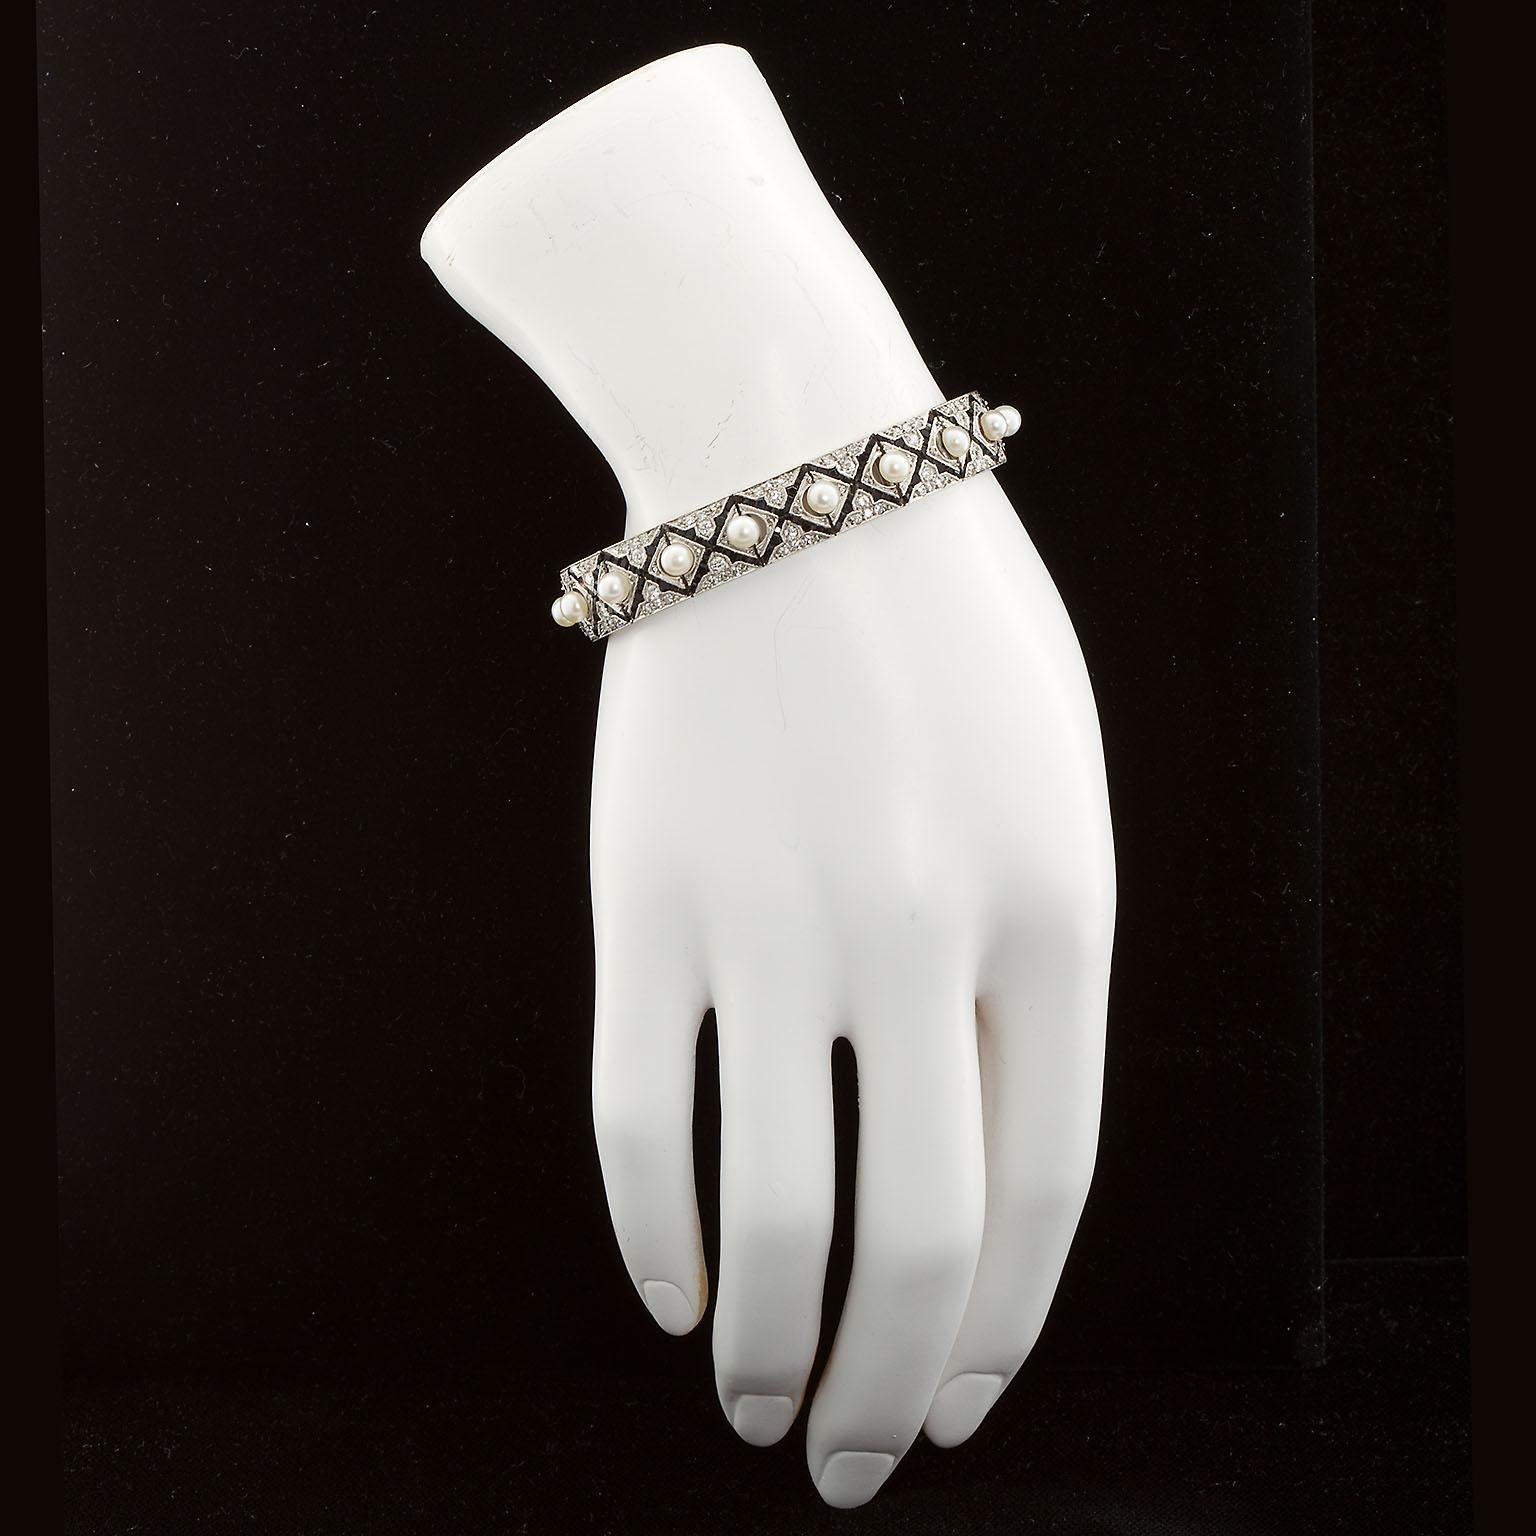 Très beau bracelet d'époque Art Déco en platine et or 18k avec diamants pleine taille, motif onyx calibré et centres en perles de culture. Un artisanat de qualité partout. Le micro-sertissage des diamants et de l'onyx est assorti aux perles